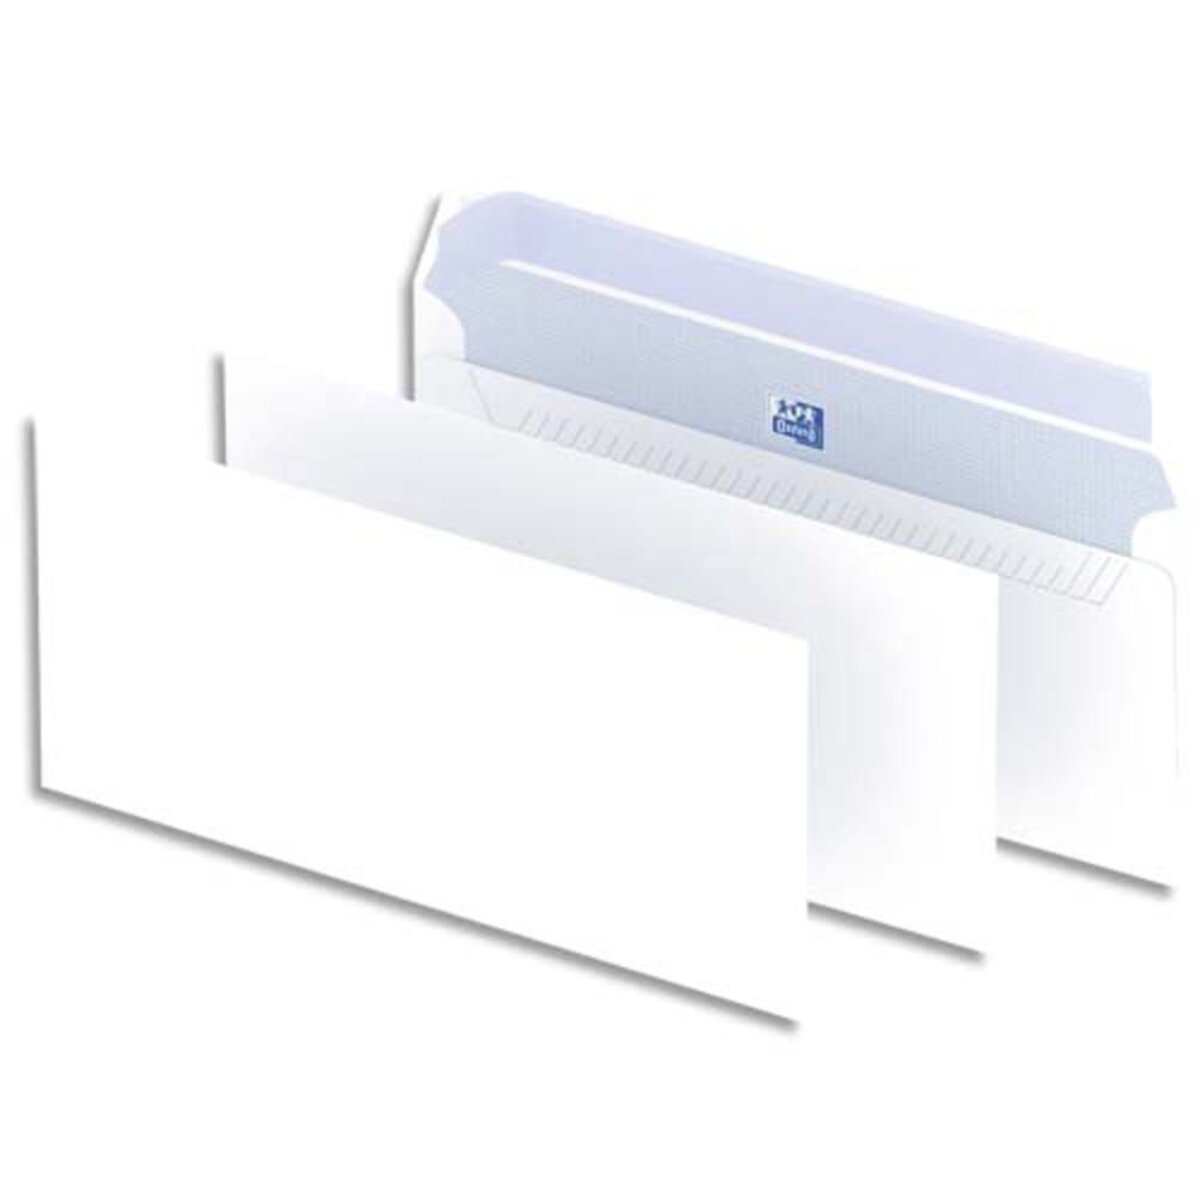 RAJA Enveloppe blanche Premium DL 110 x 220 mm100g avec fenêtre fermeture  bande auto-adhésive - Boîte de 500